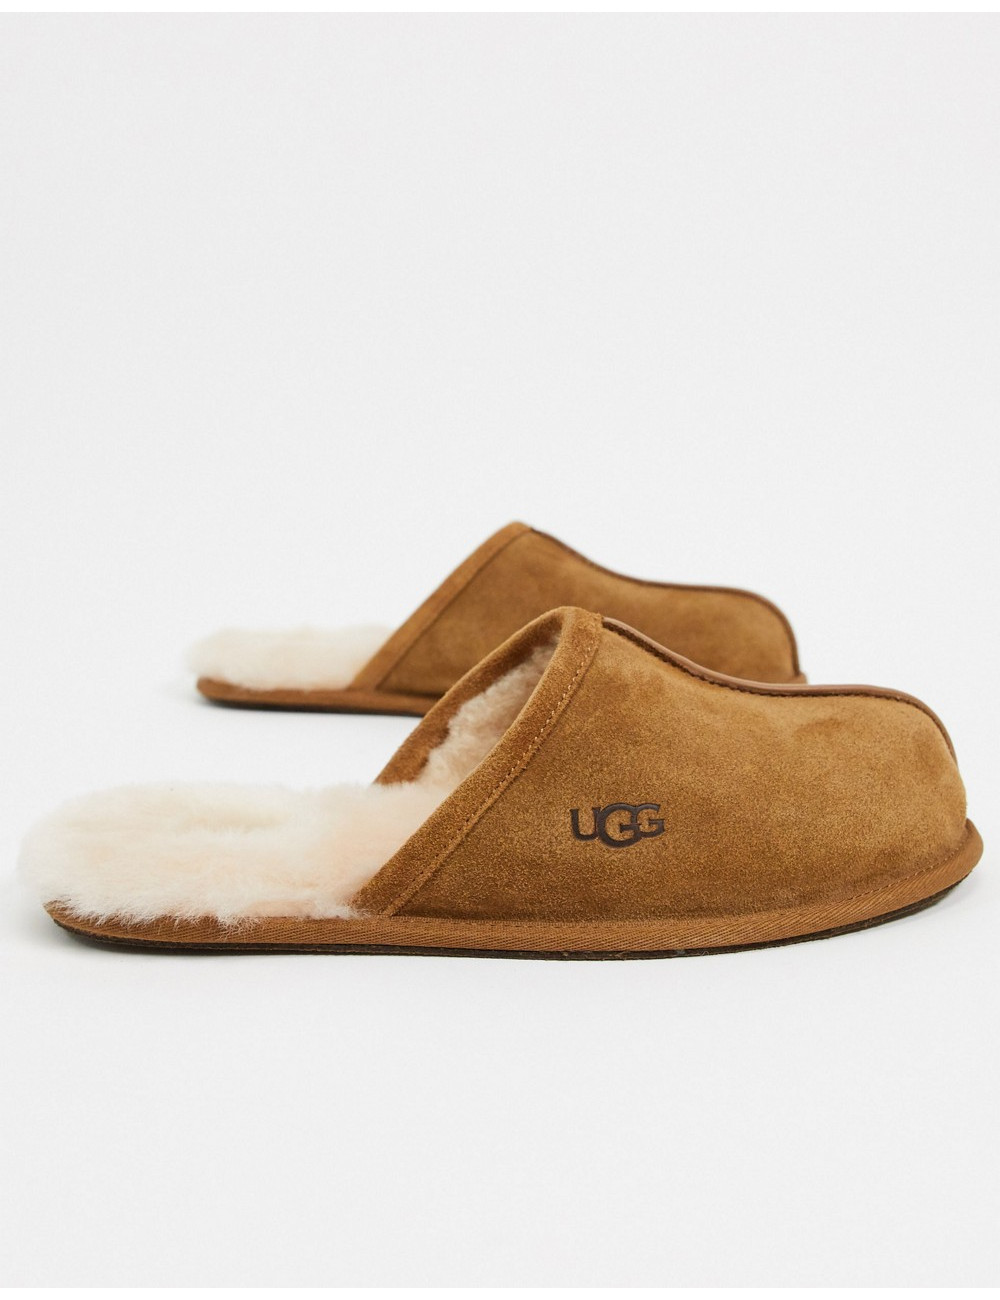 UGG scuff slippers in tan...